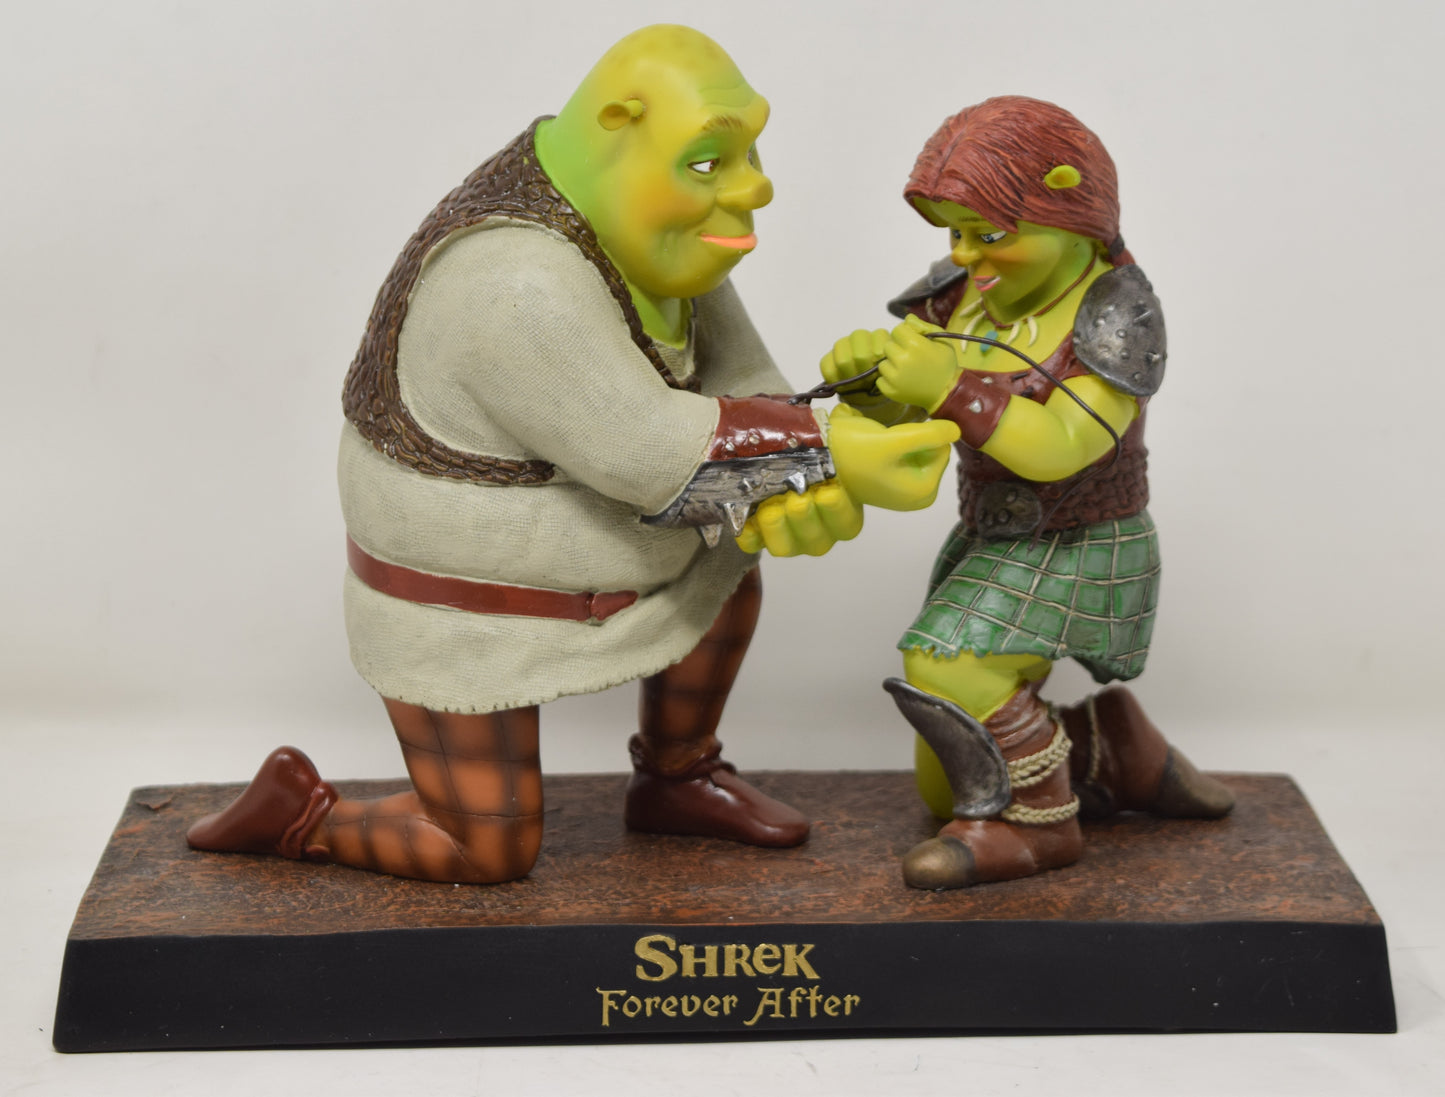 Shrek Forever After Maquette Statue Warren Stratford Dreamworks New